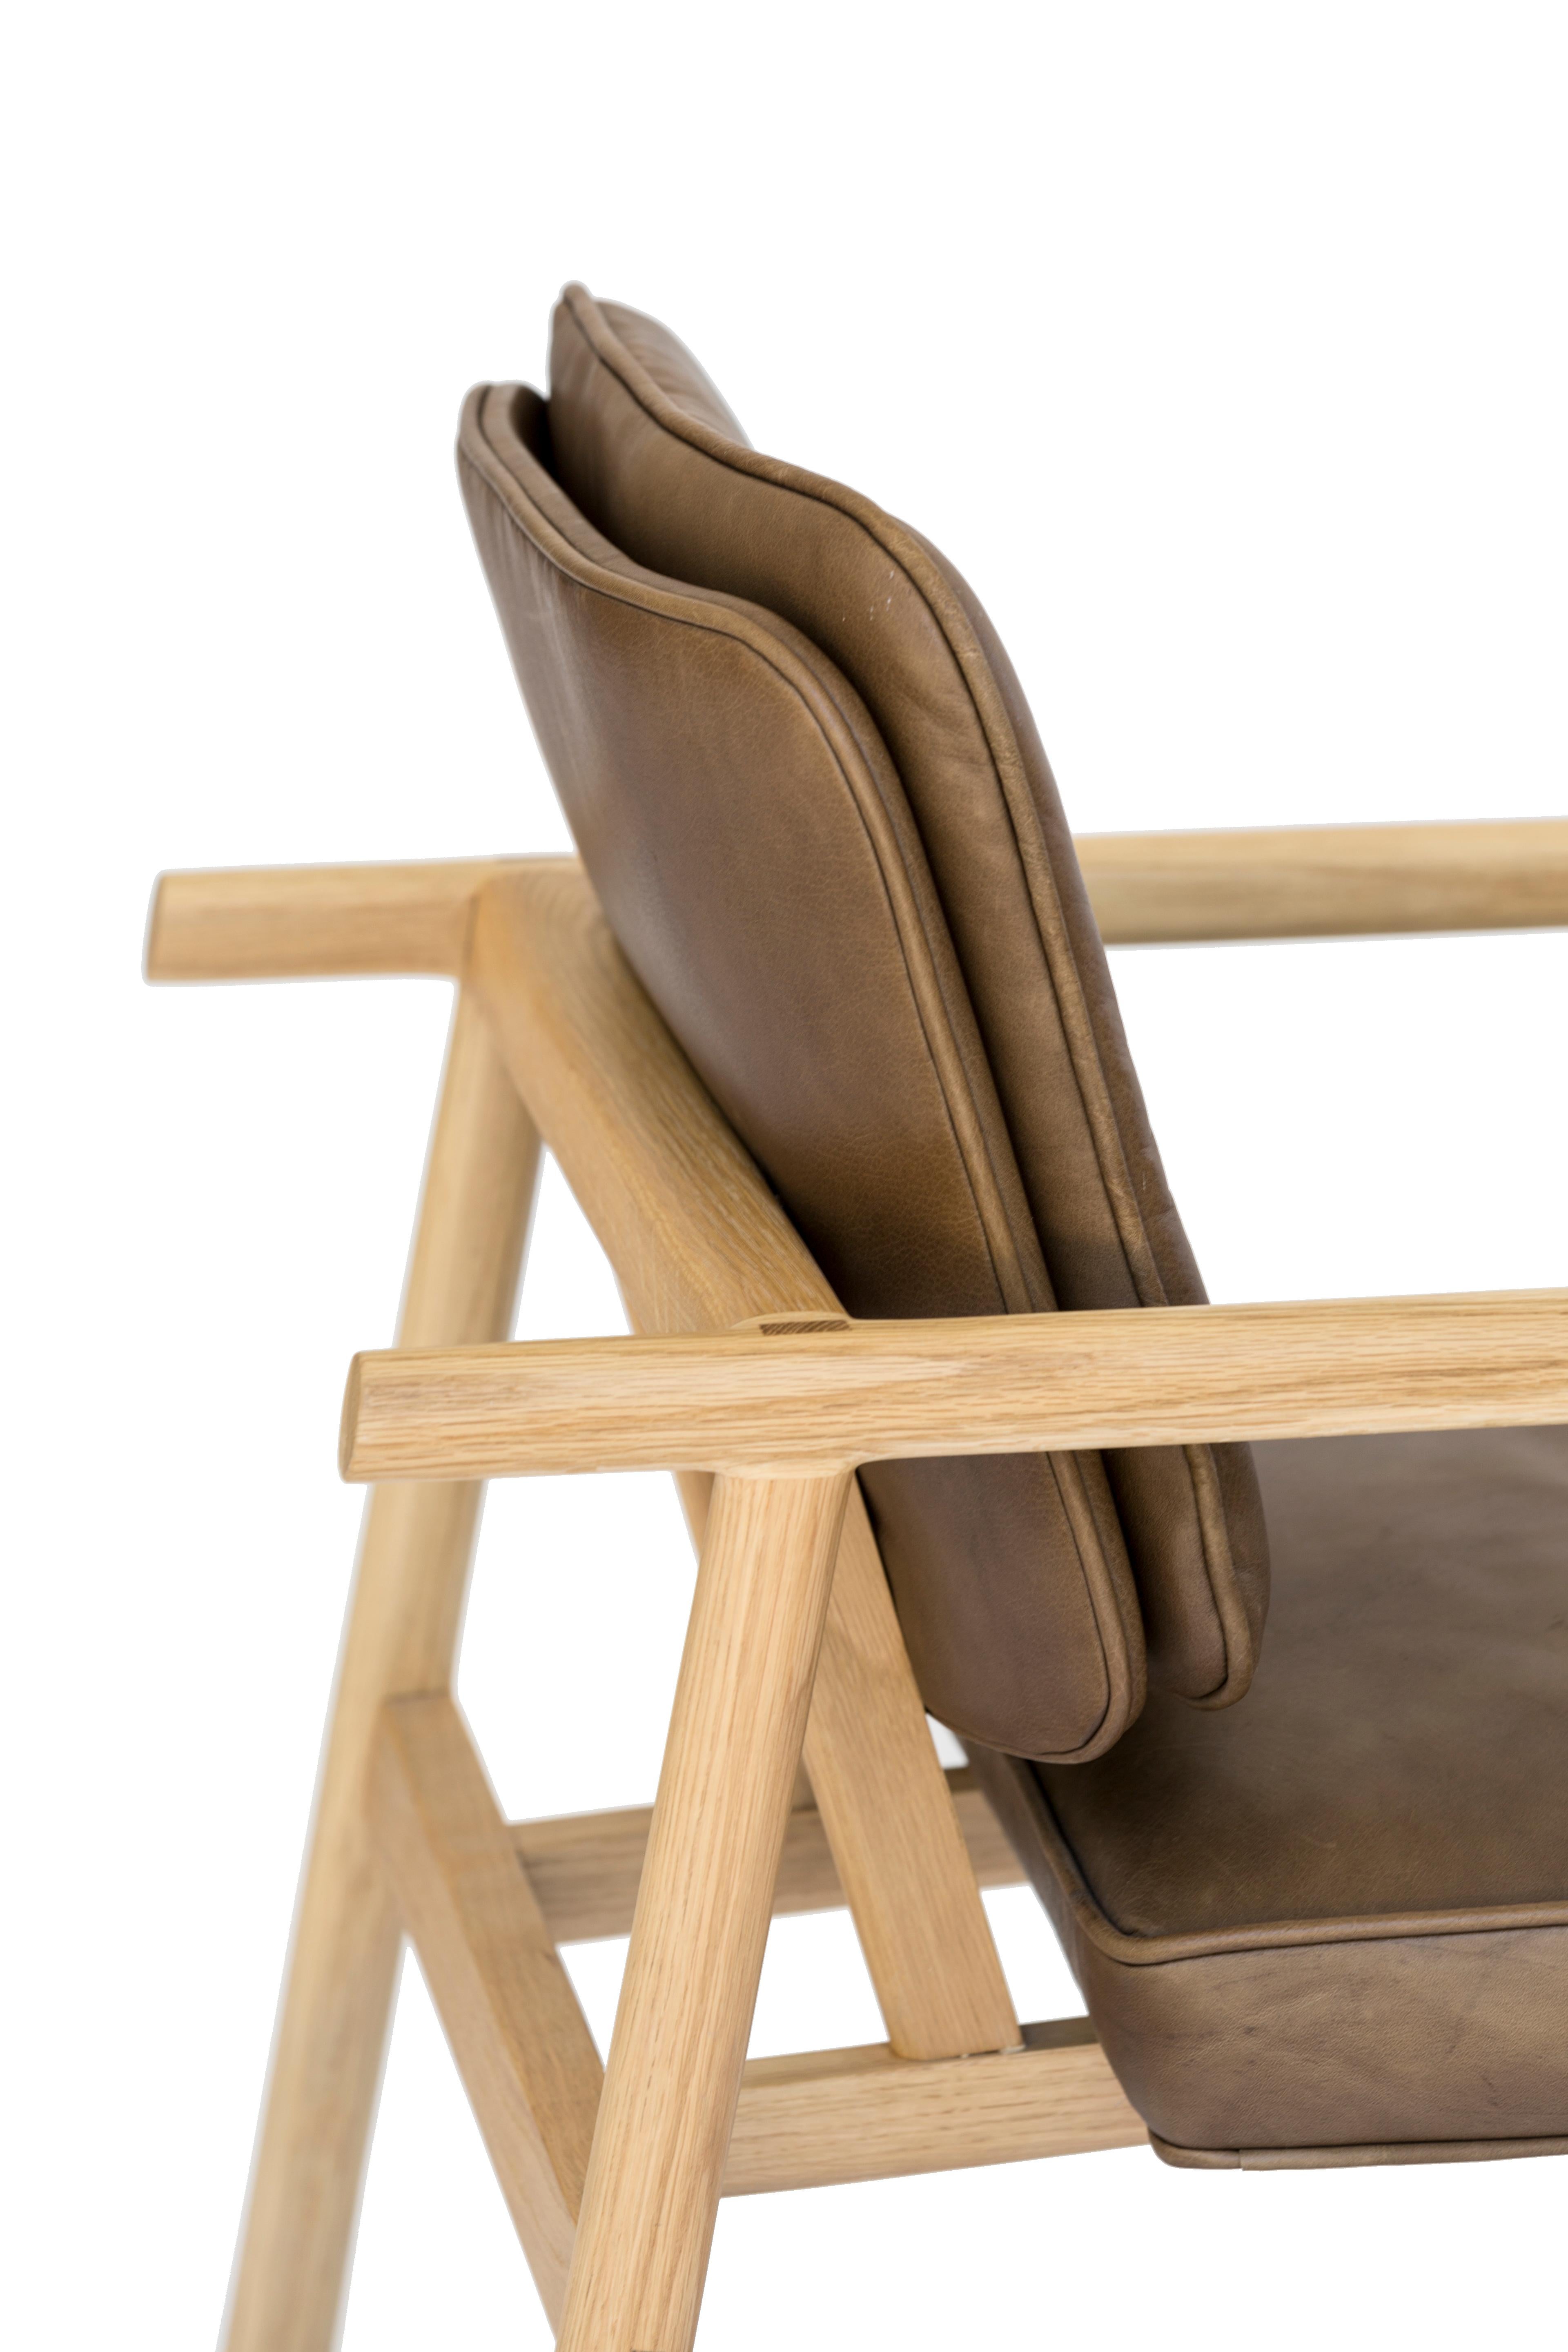 Construction en bois massif avec menuiserie découpée à la main et assise et dossier rembourrés sur mesure. Cette chaise est présentée en chêne naturel et cuir olive.

Choix de cuir en stock : noir, olive, camel ou cuir de végetan.
Choix du bois :